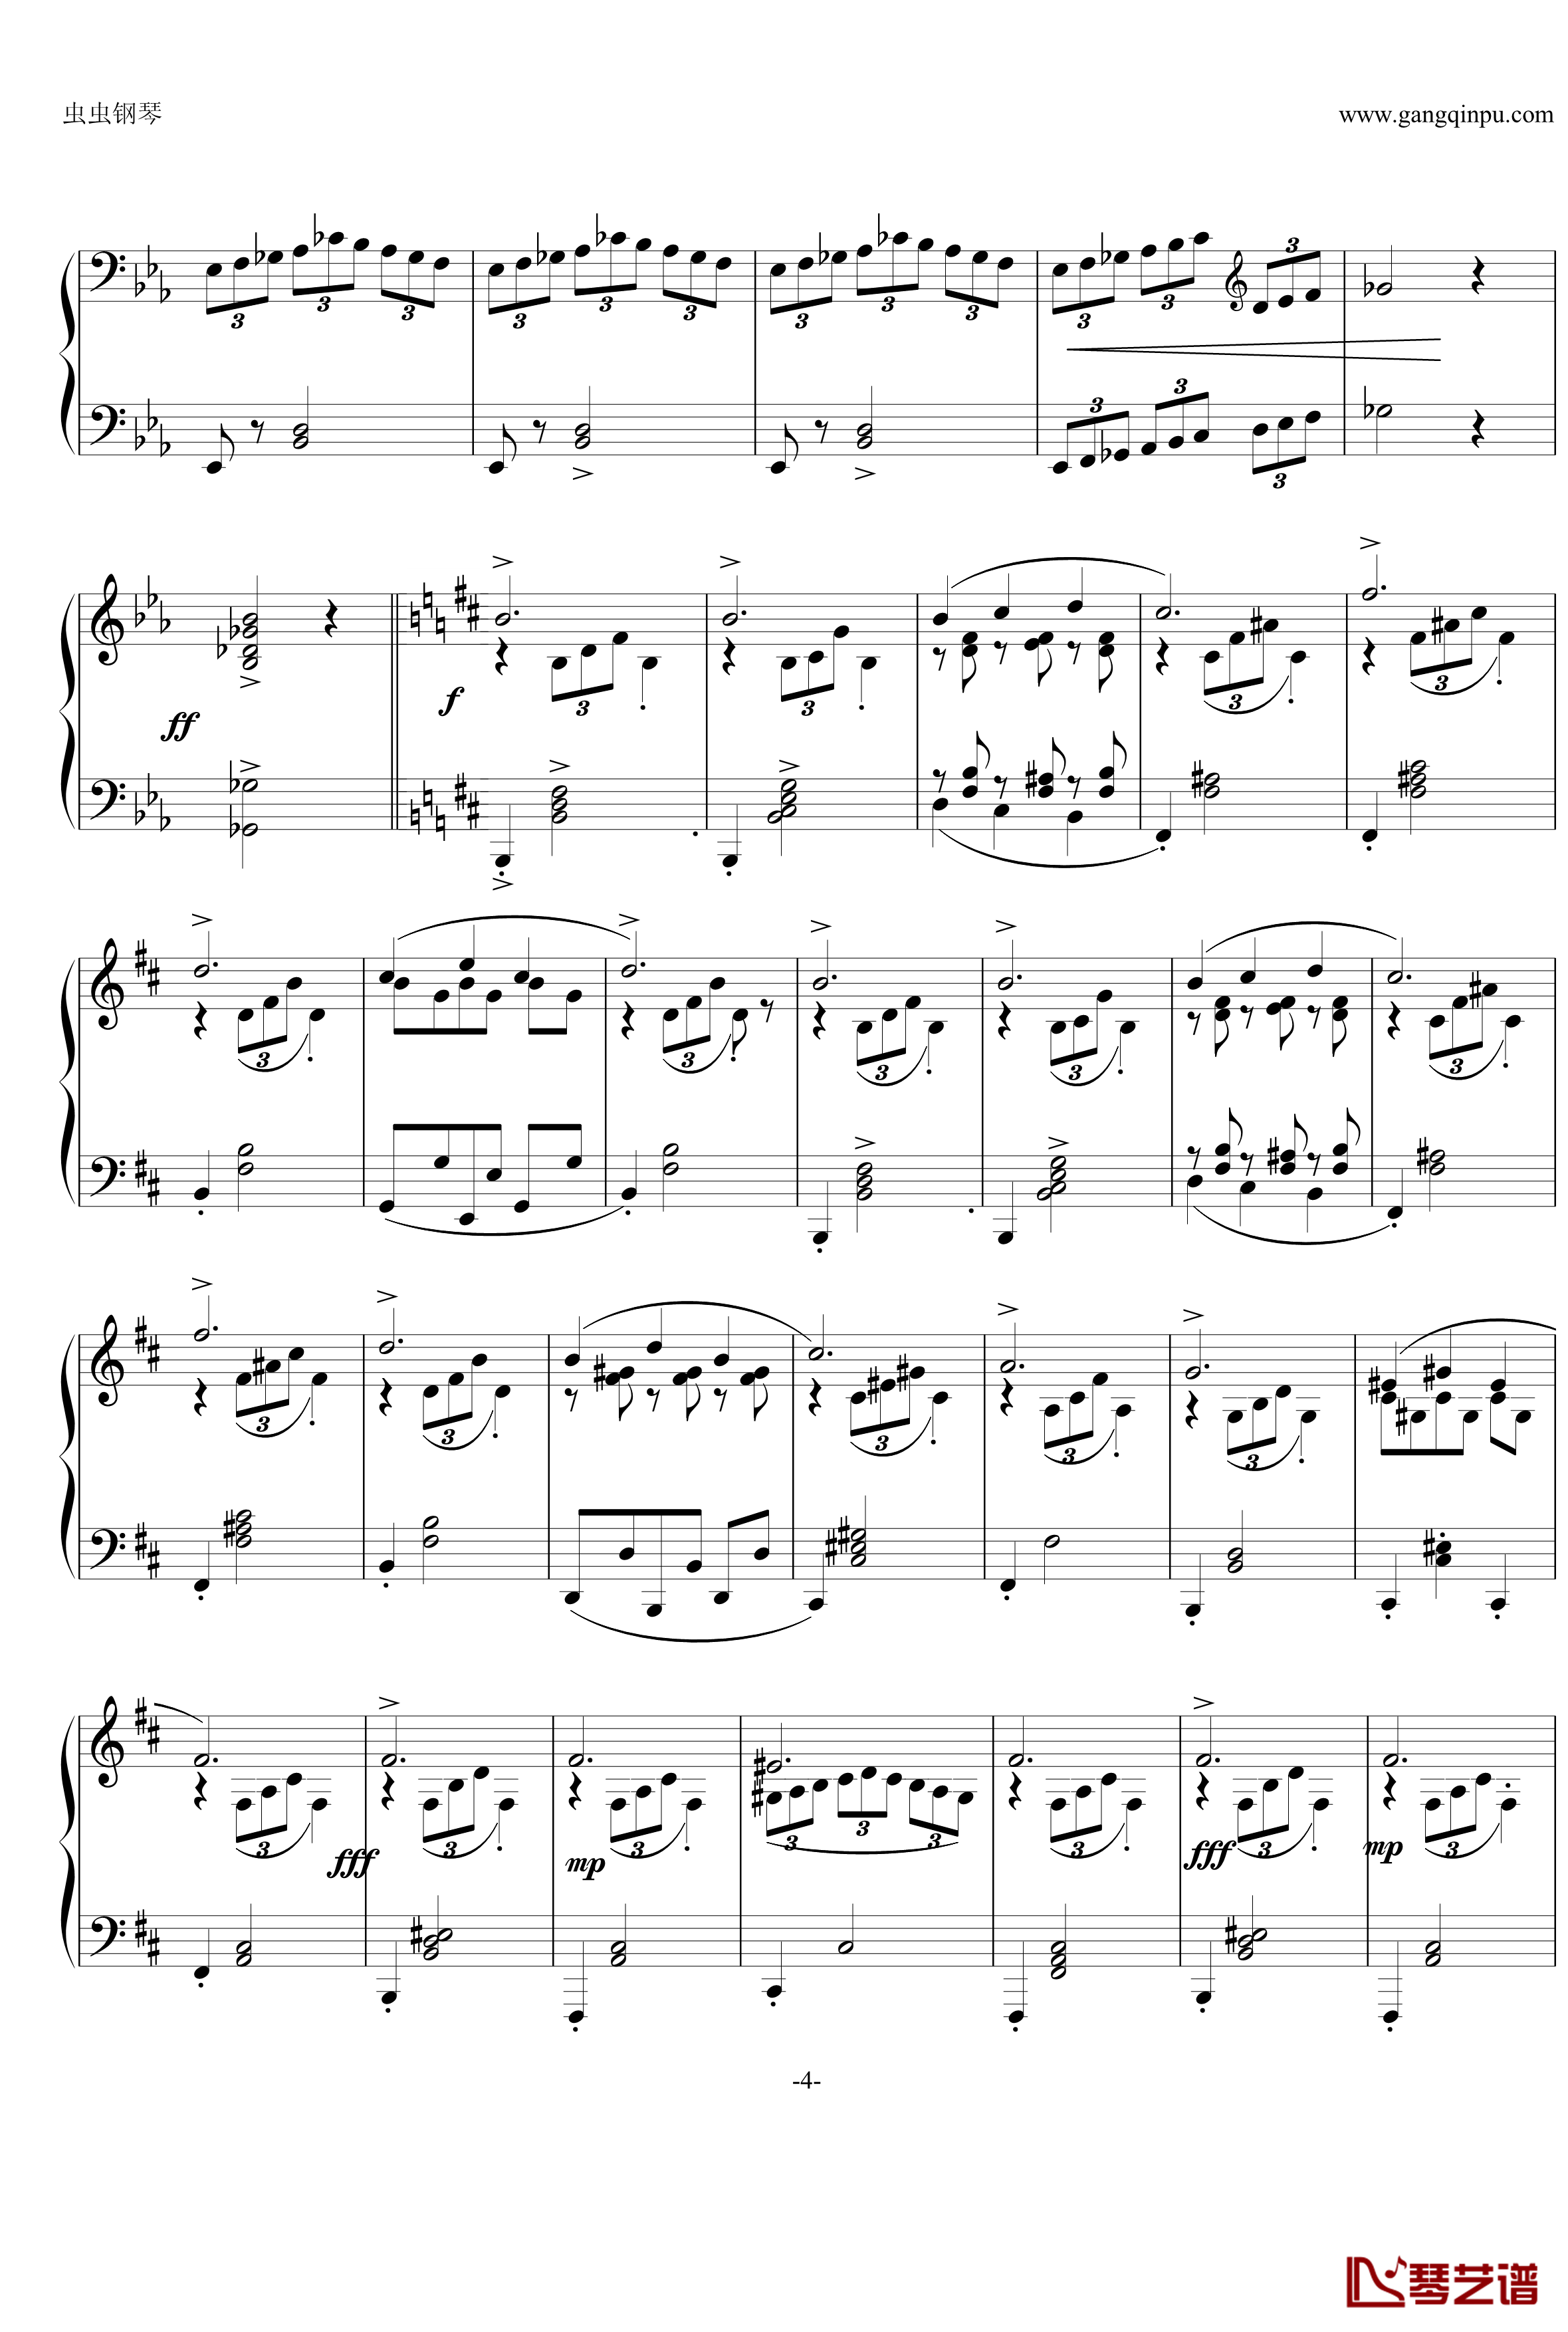 即兴曲Op.90 No.2钢琴谱-舒伯特-又名D899 No.24